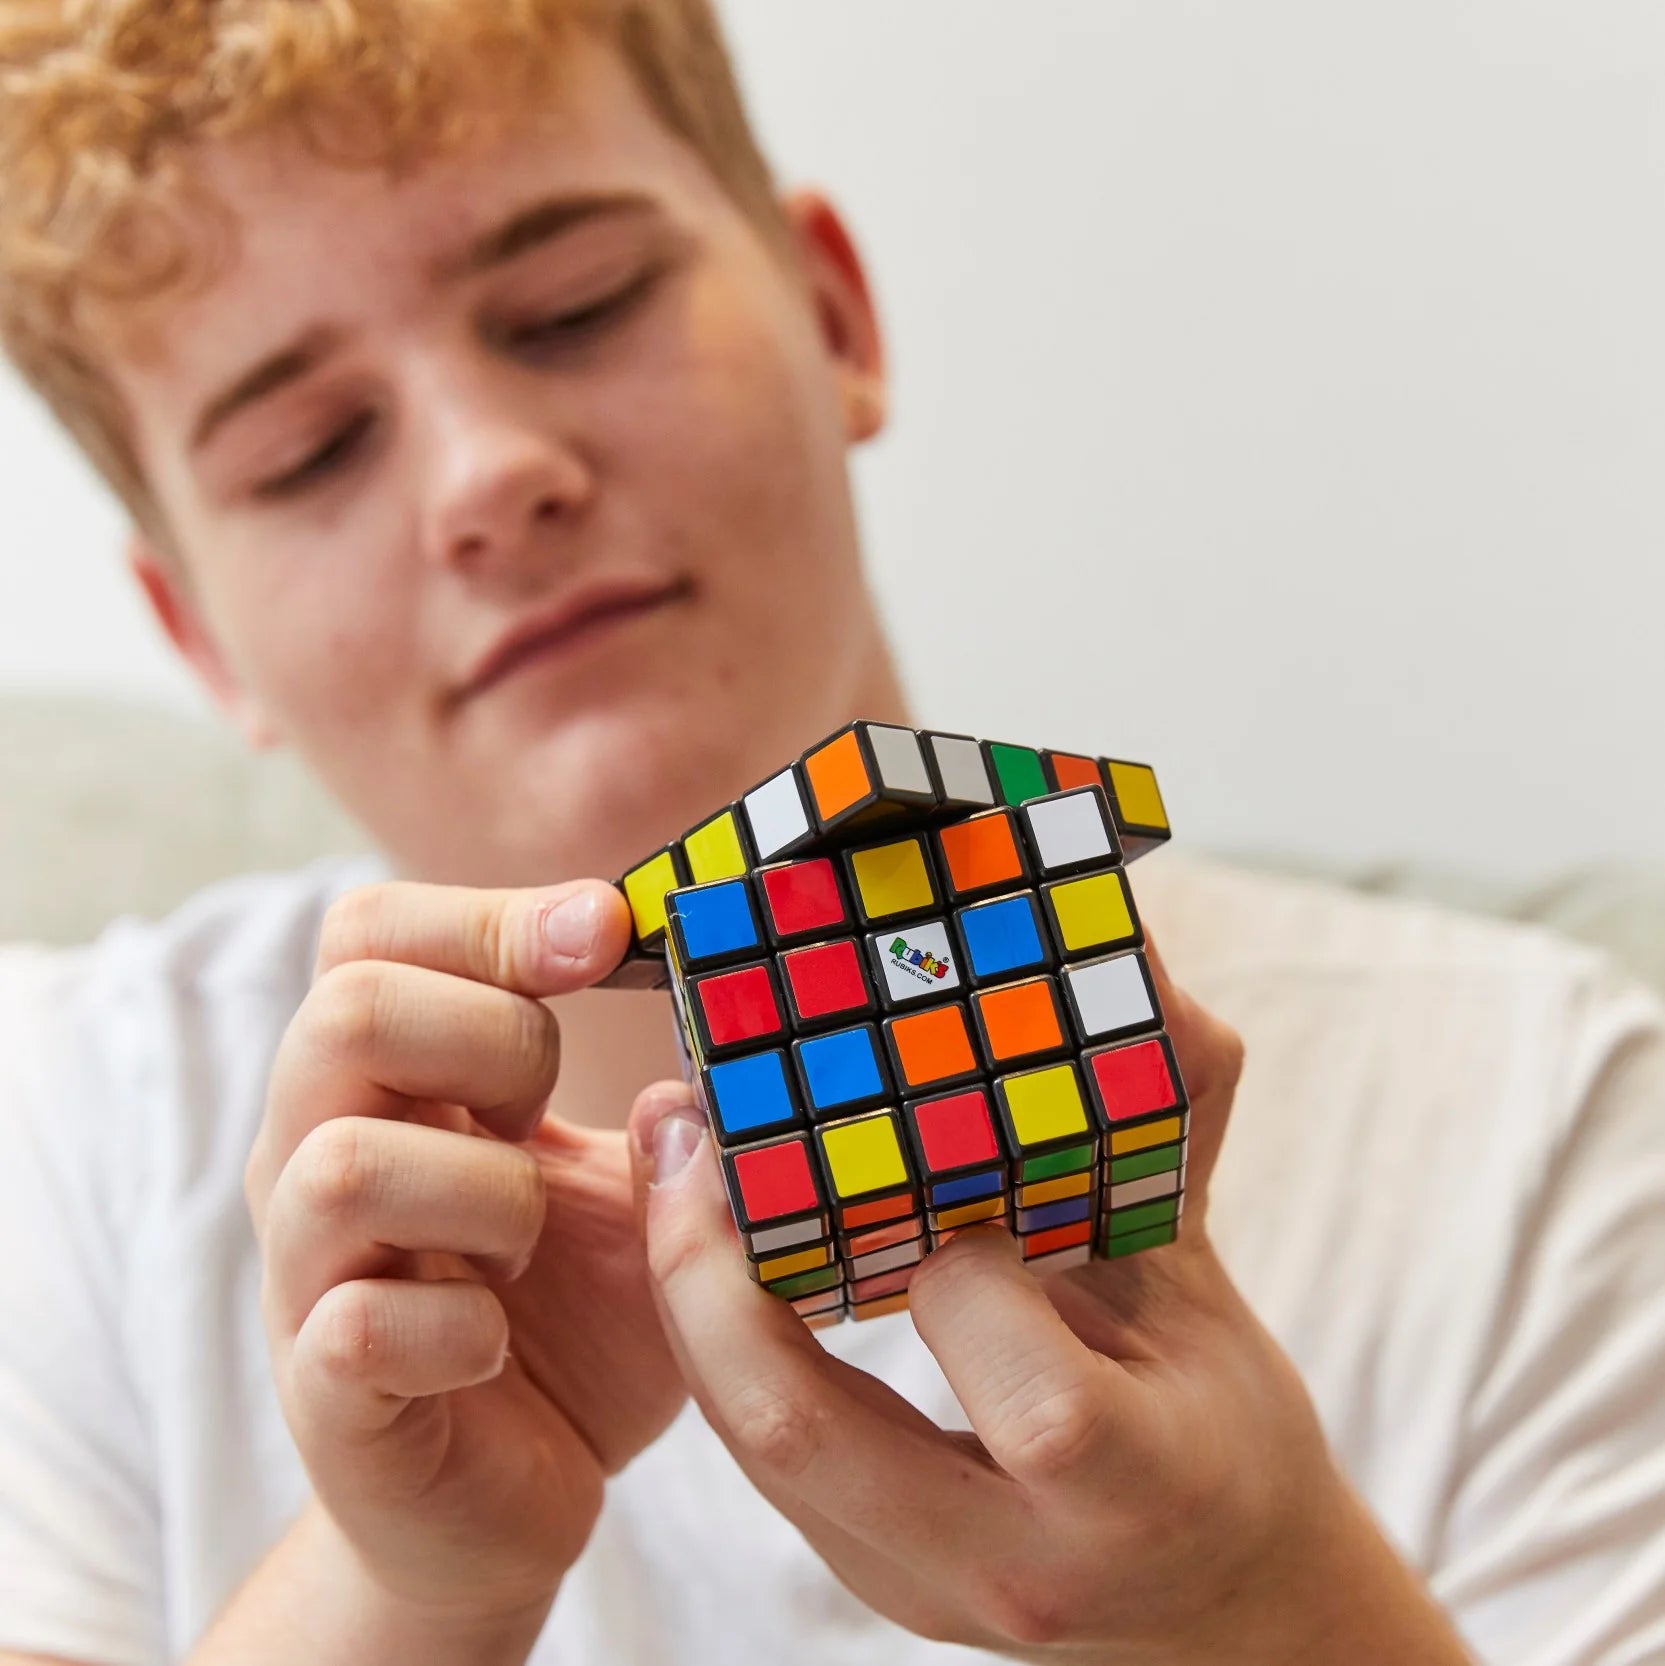 Boy with Rubiks Cube 5x5